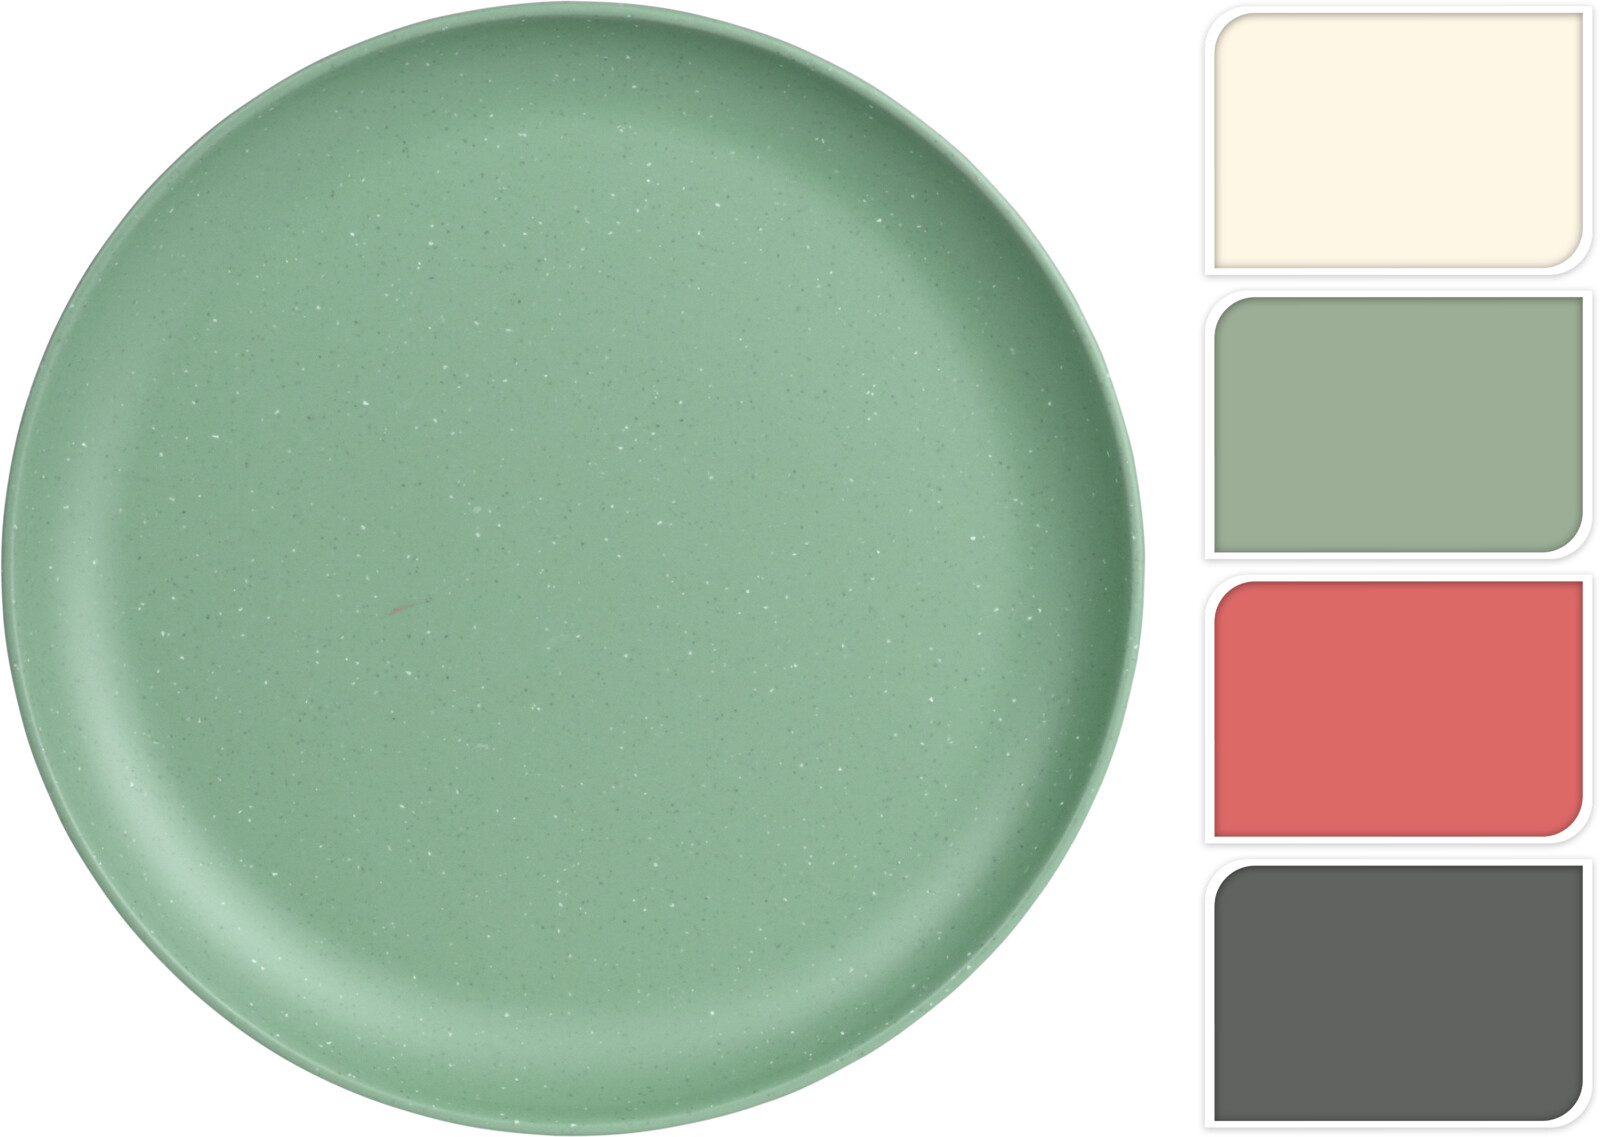 Plato melamina surtido mate gris, verde, coral y c llano 25 cm